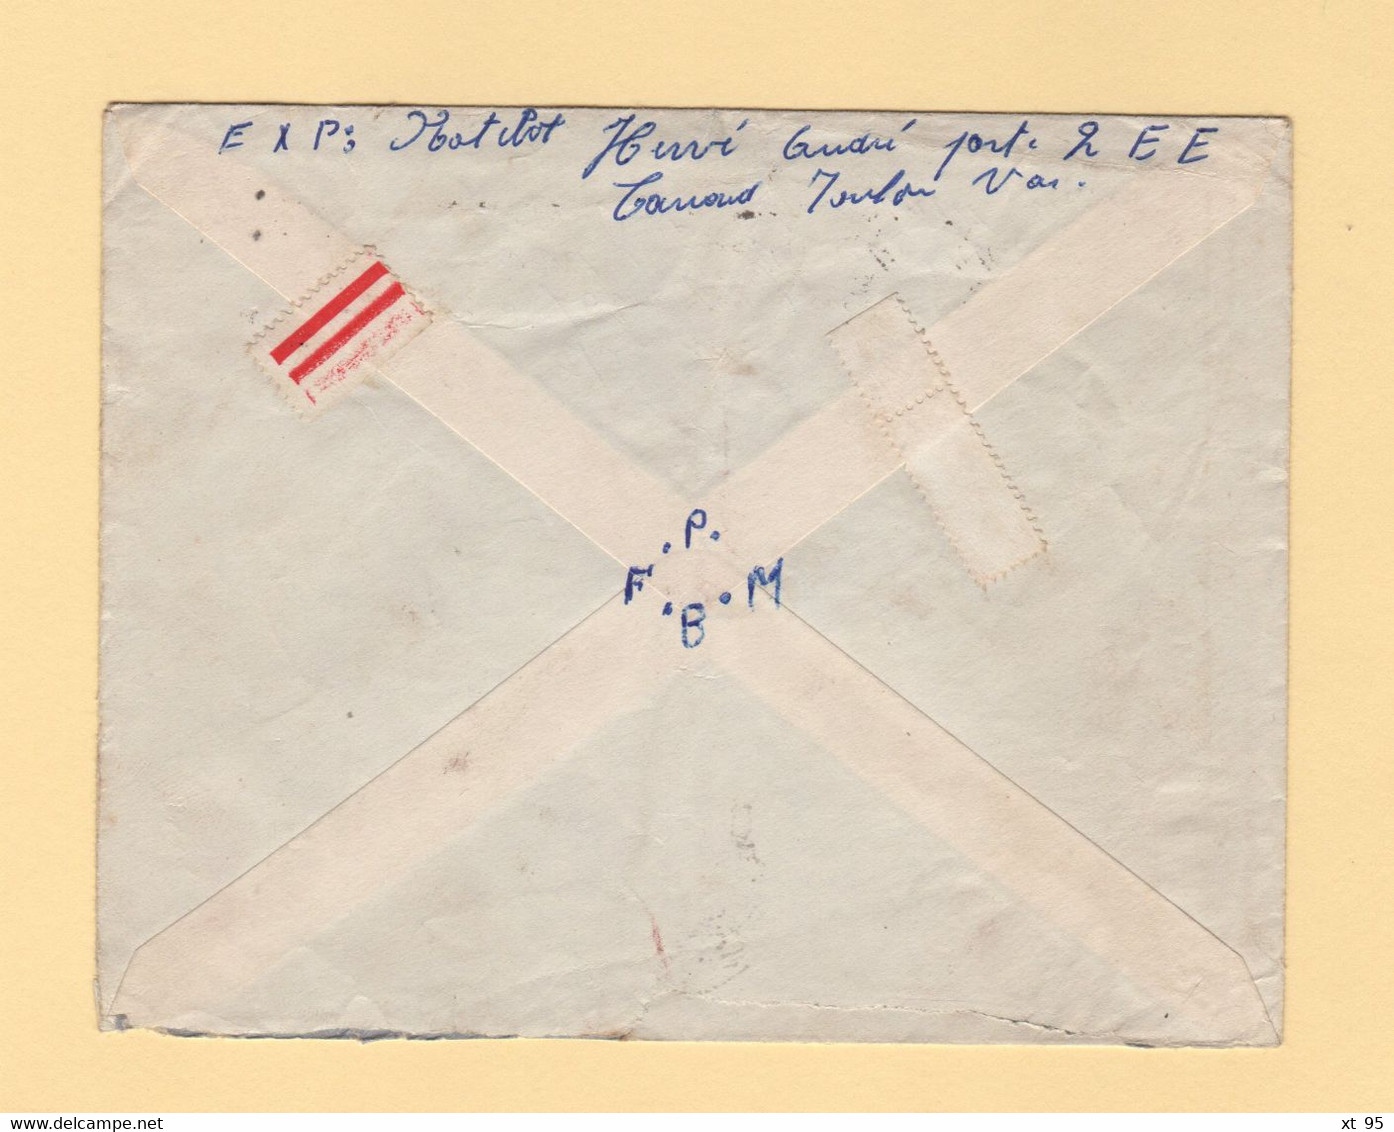 Poste Navale - Escorteur Rapide Cassard - Toulon - 1959 - Timbre FM - Naval Post